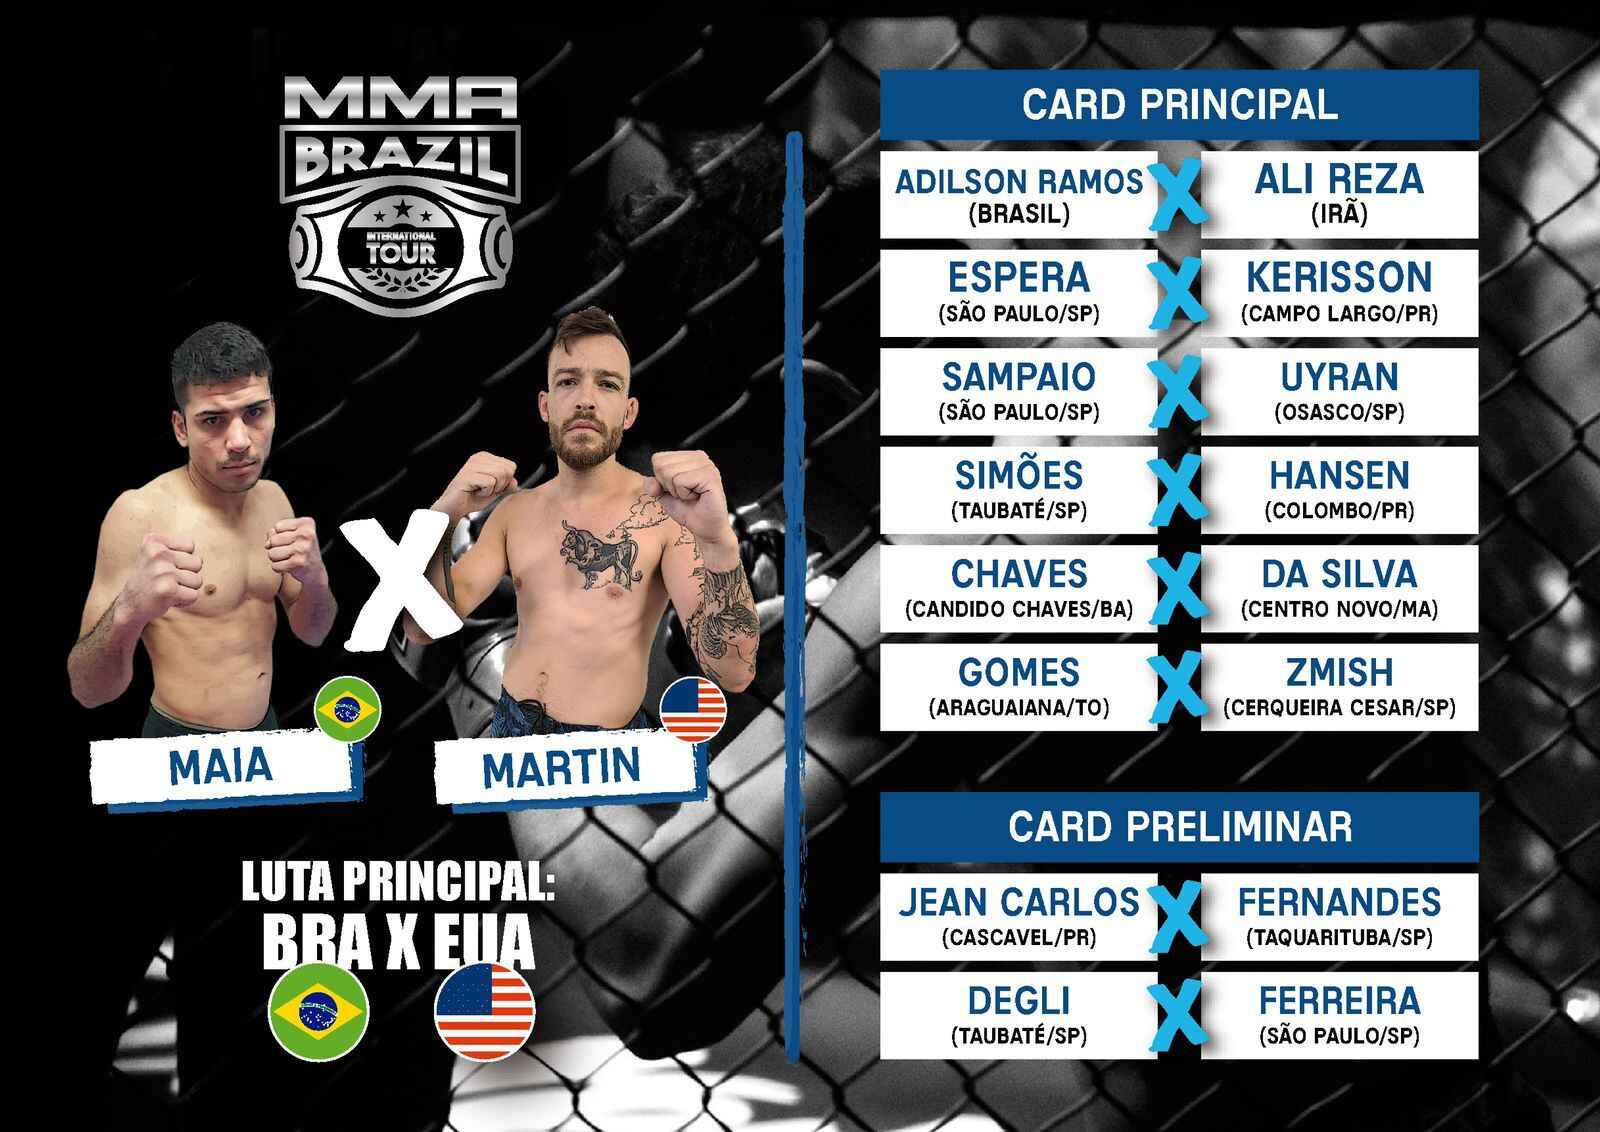 Ingressos do MMA Brazil Internacional Tour no dia 17 de setembro já estão disponíveis para troca